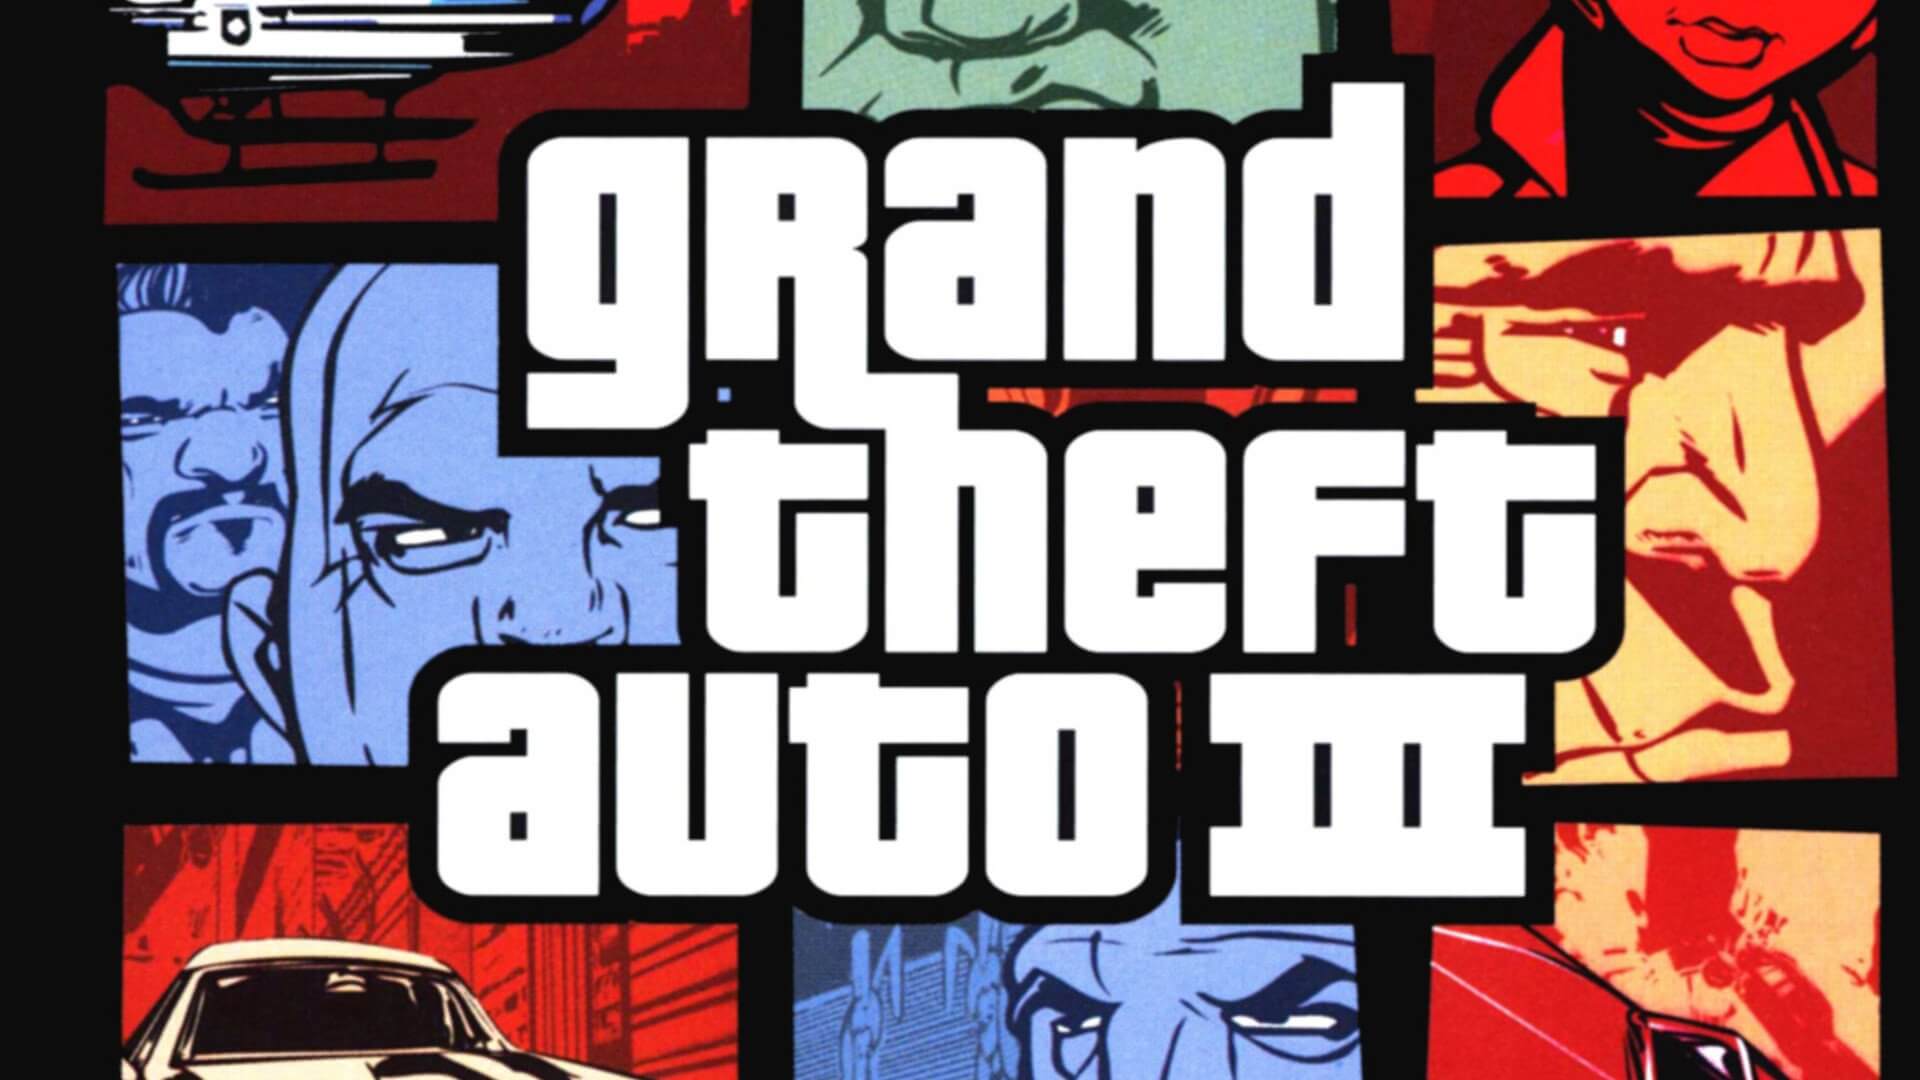 Rockstar will bring back classic GTA 3, Vice City, and San Andreas